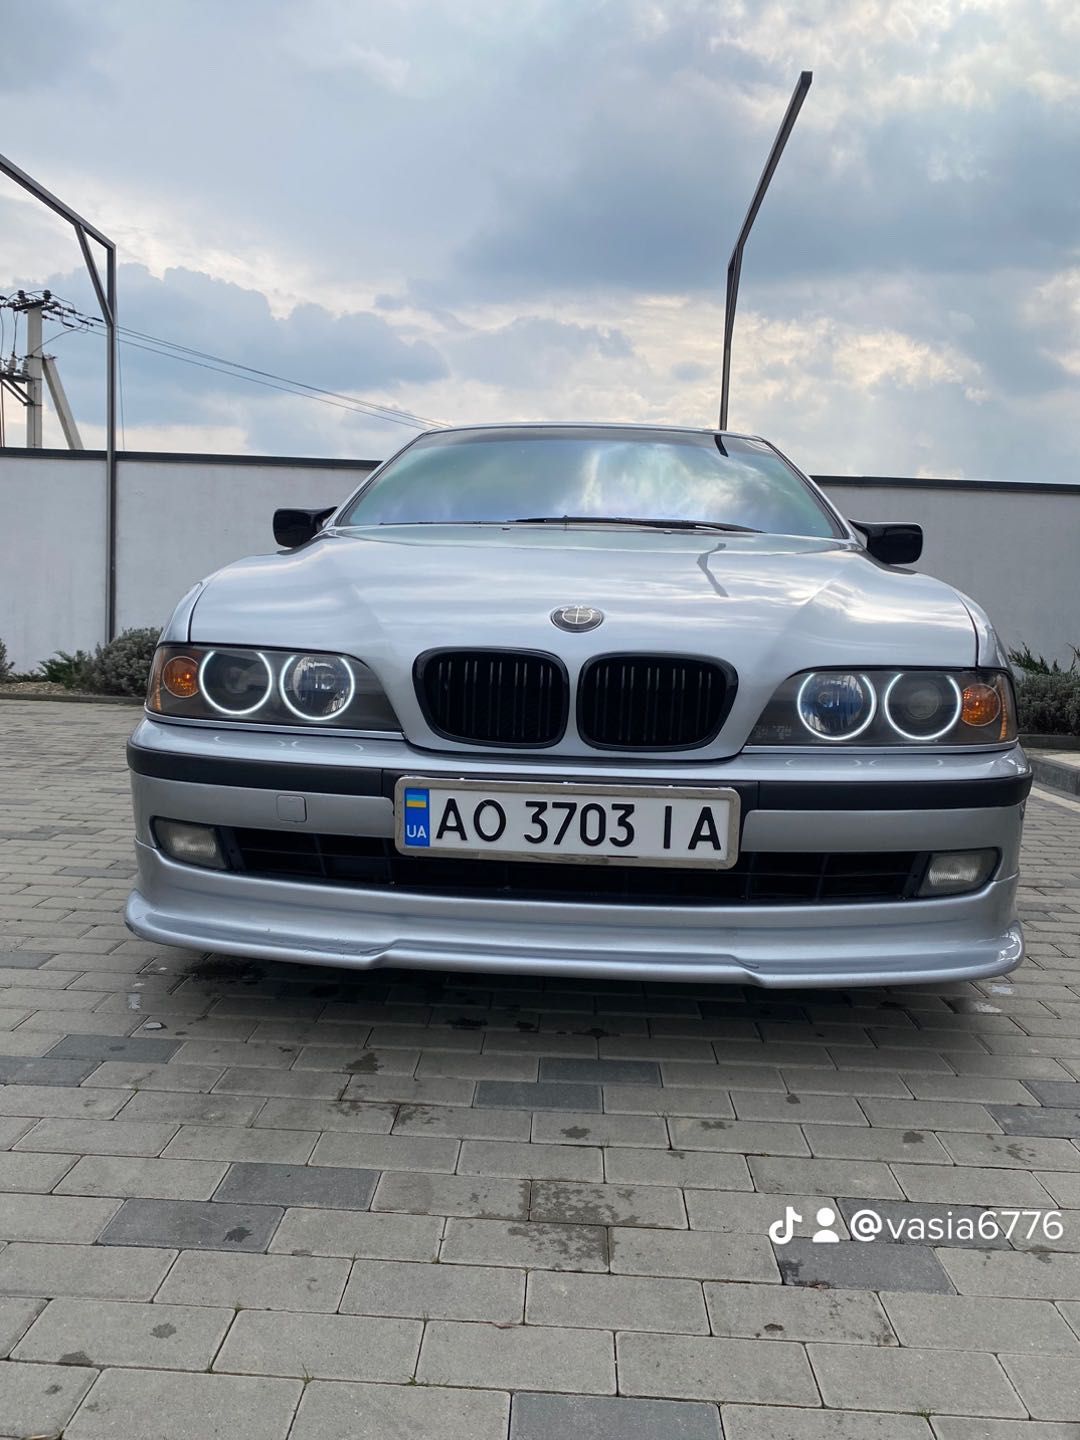 Продам BMW 1999 рік стан 10/10. 2,5 дізель